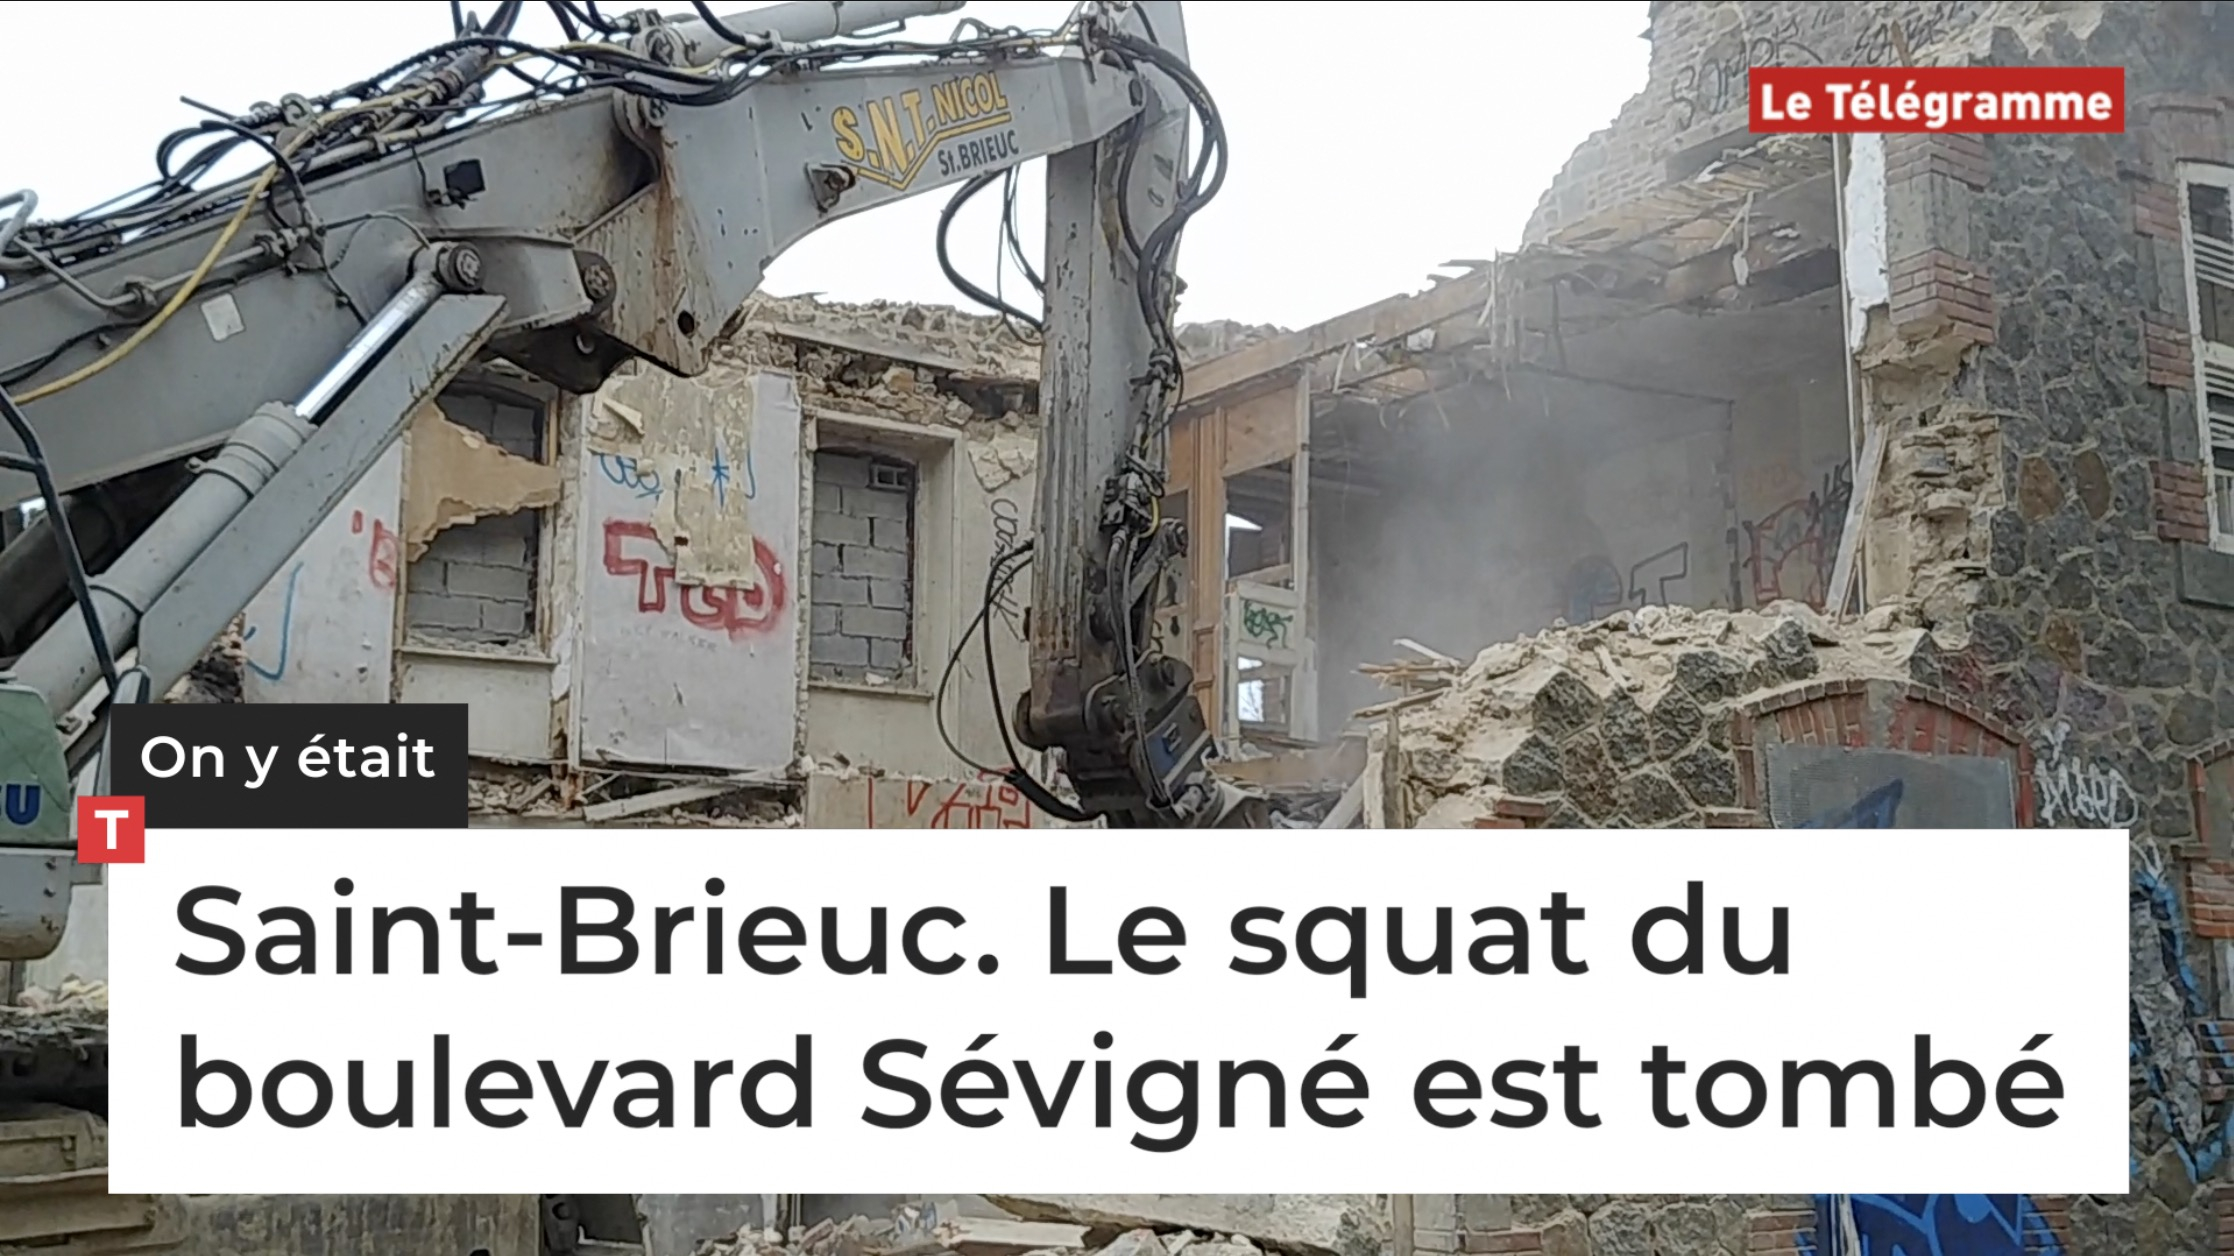 Saint-Brieuc. Le squat du boulevard Sévigné est tombé (Le Télégramme)